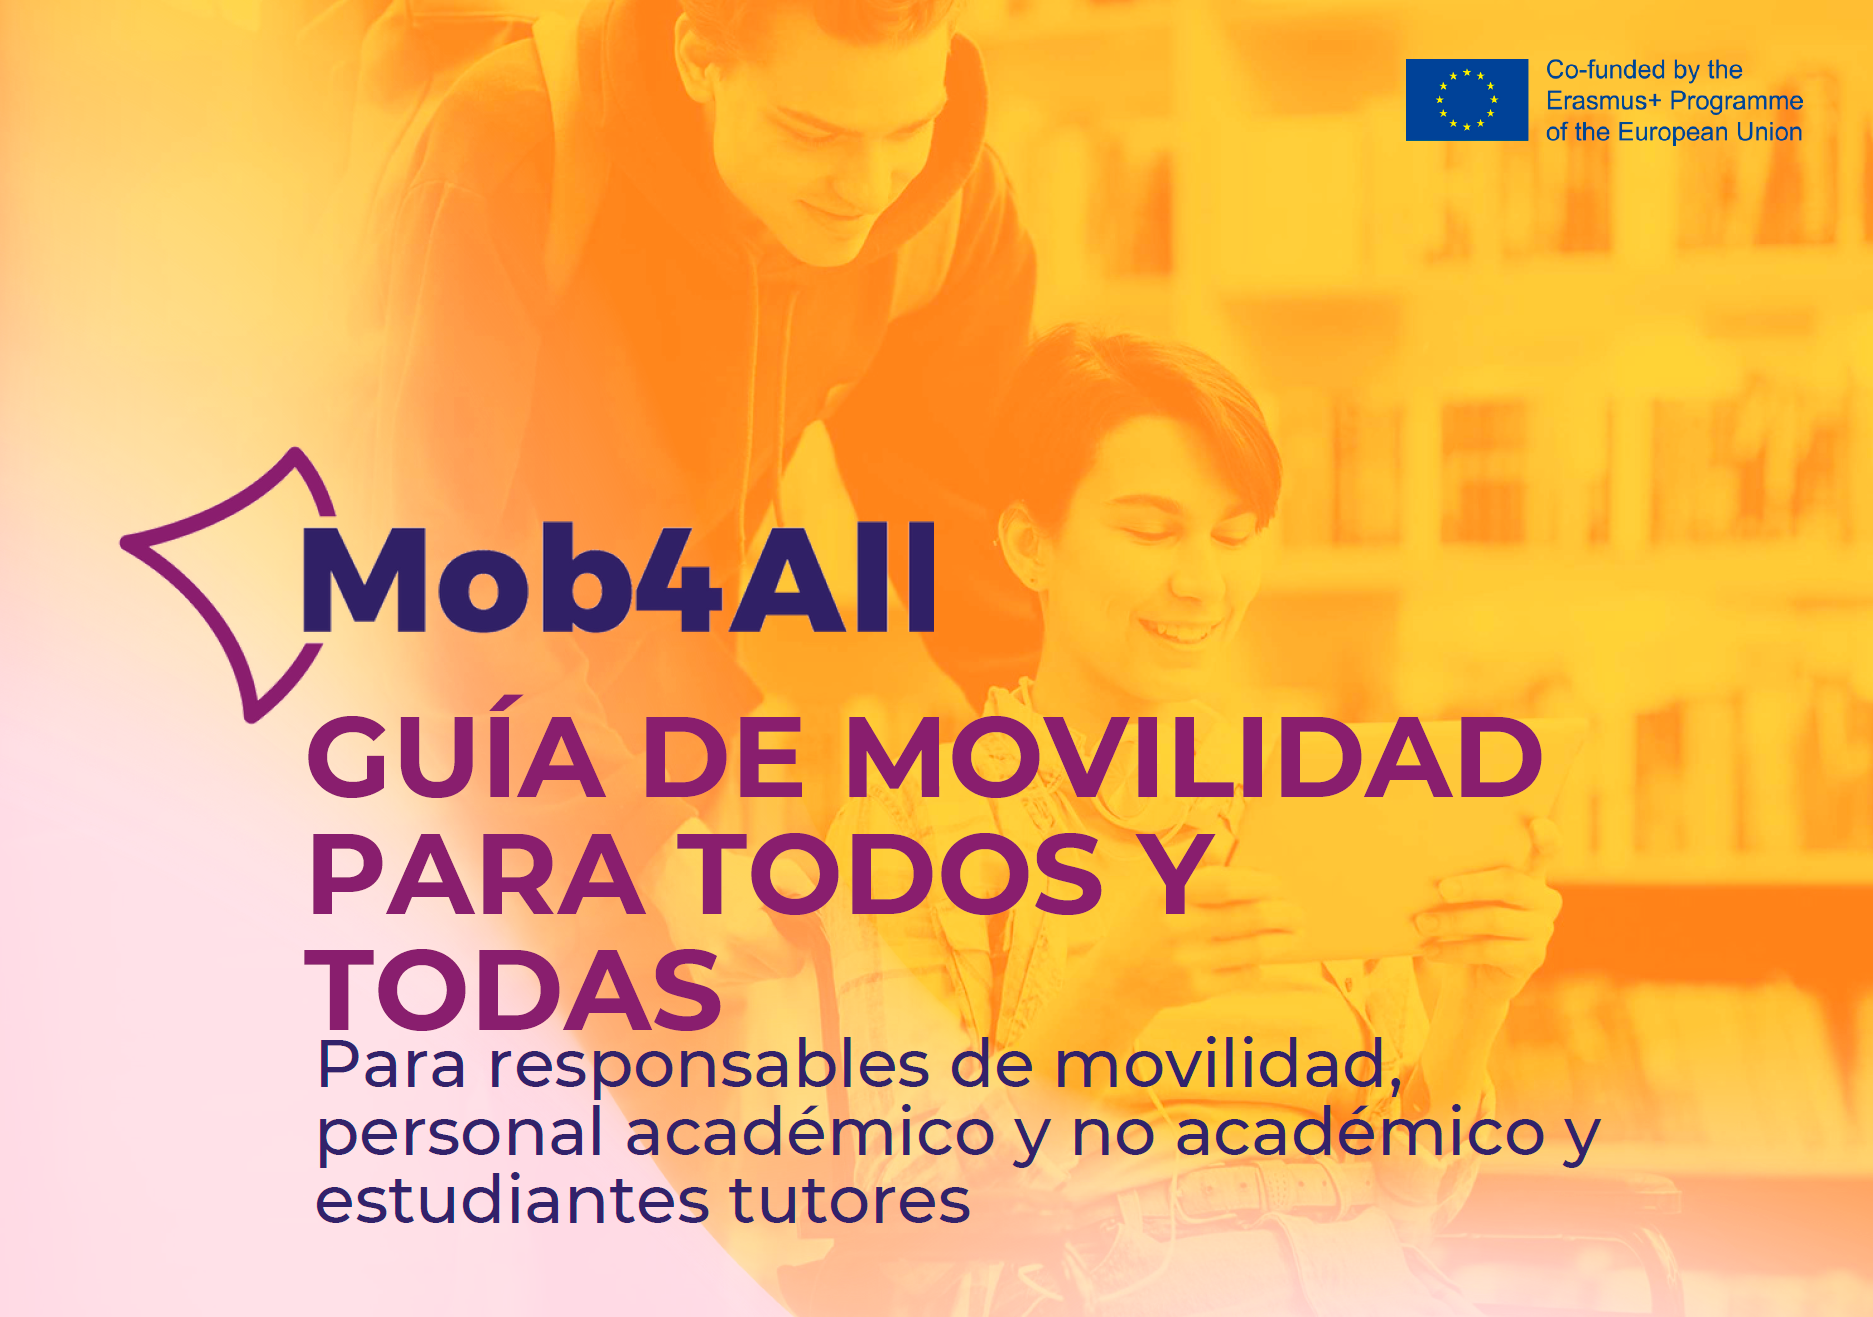 Mob4All: Guía de movilidad para todos y todas